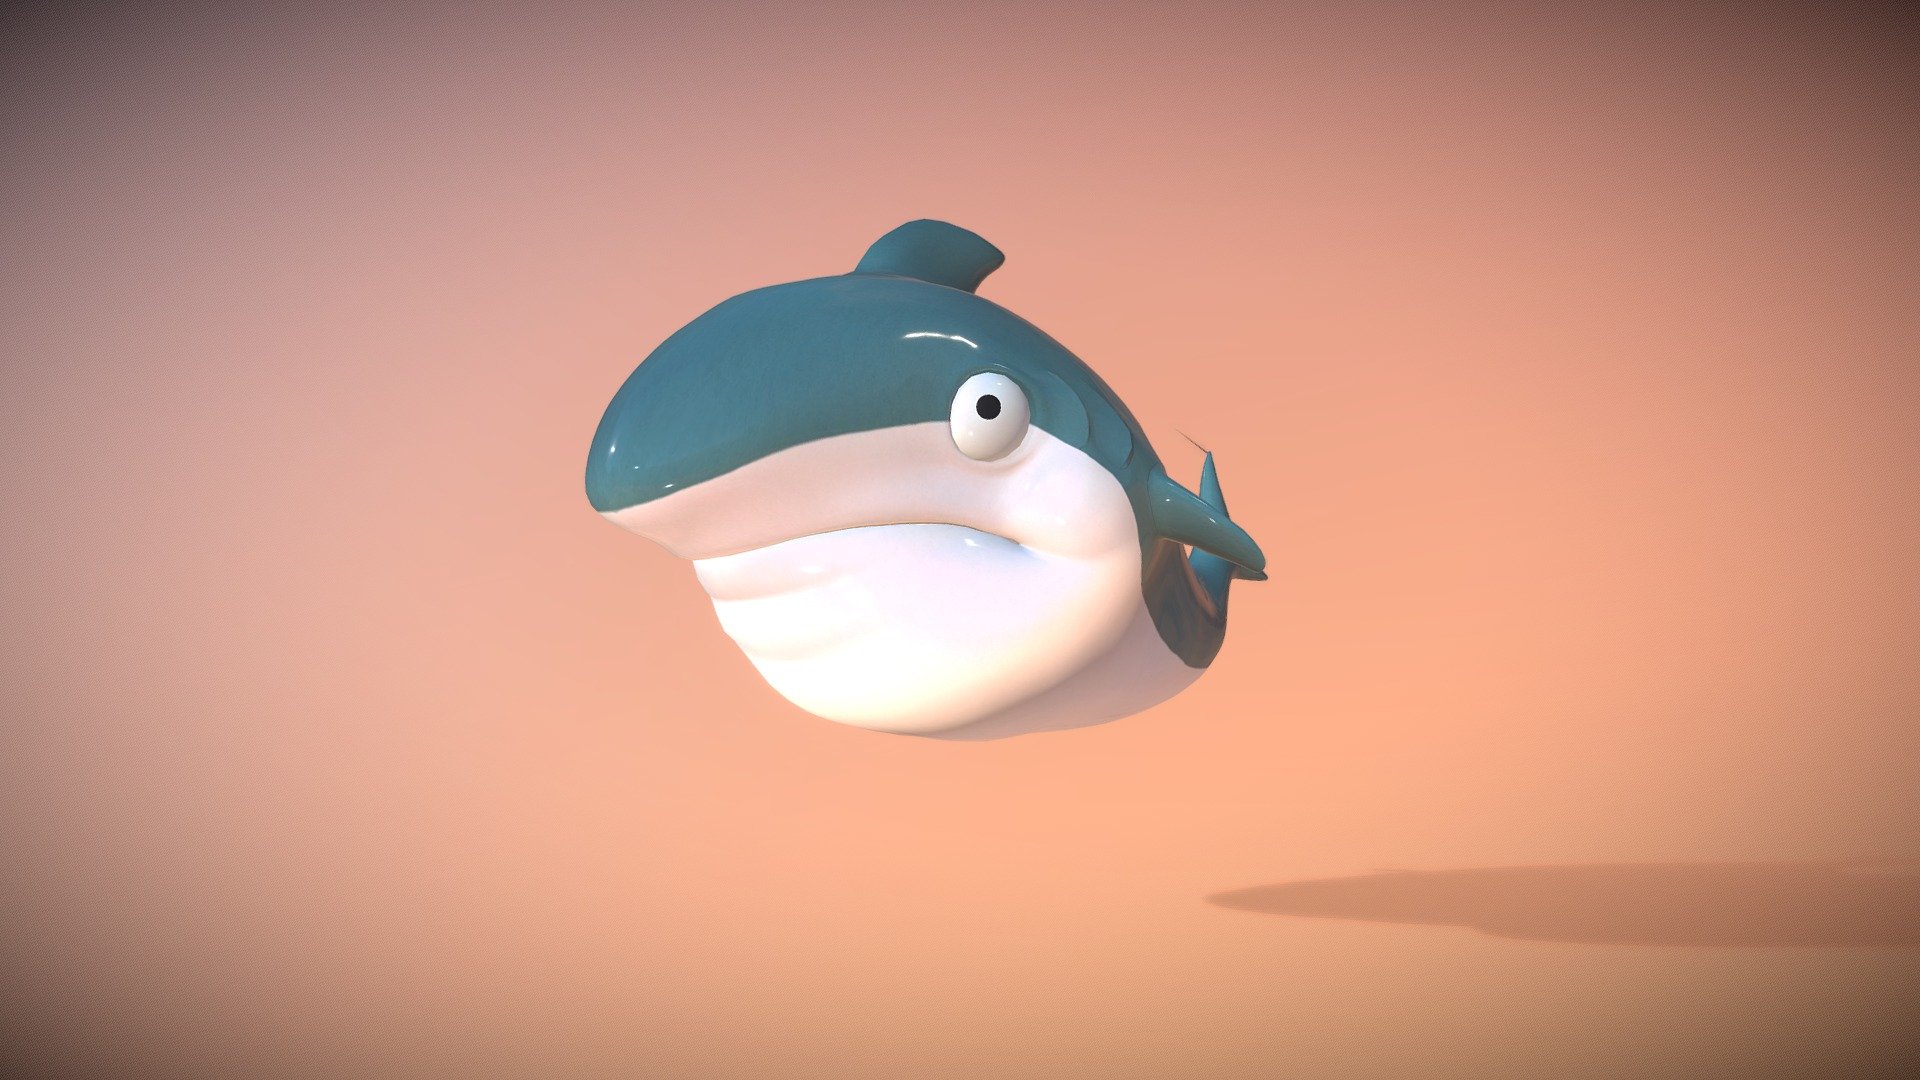 A Shark - shark cartoon - 3D model by Baidu_Input_Team 3d model